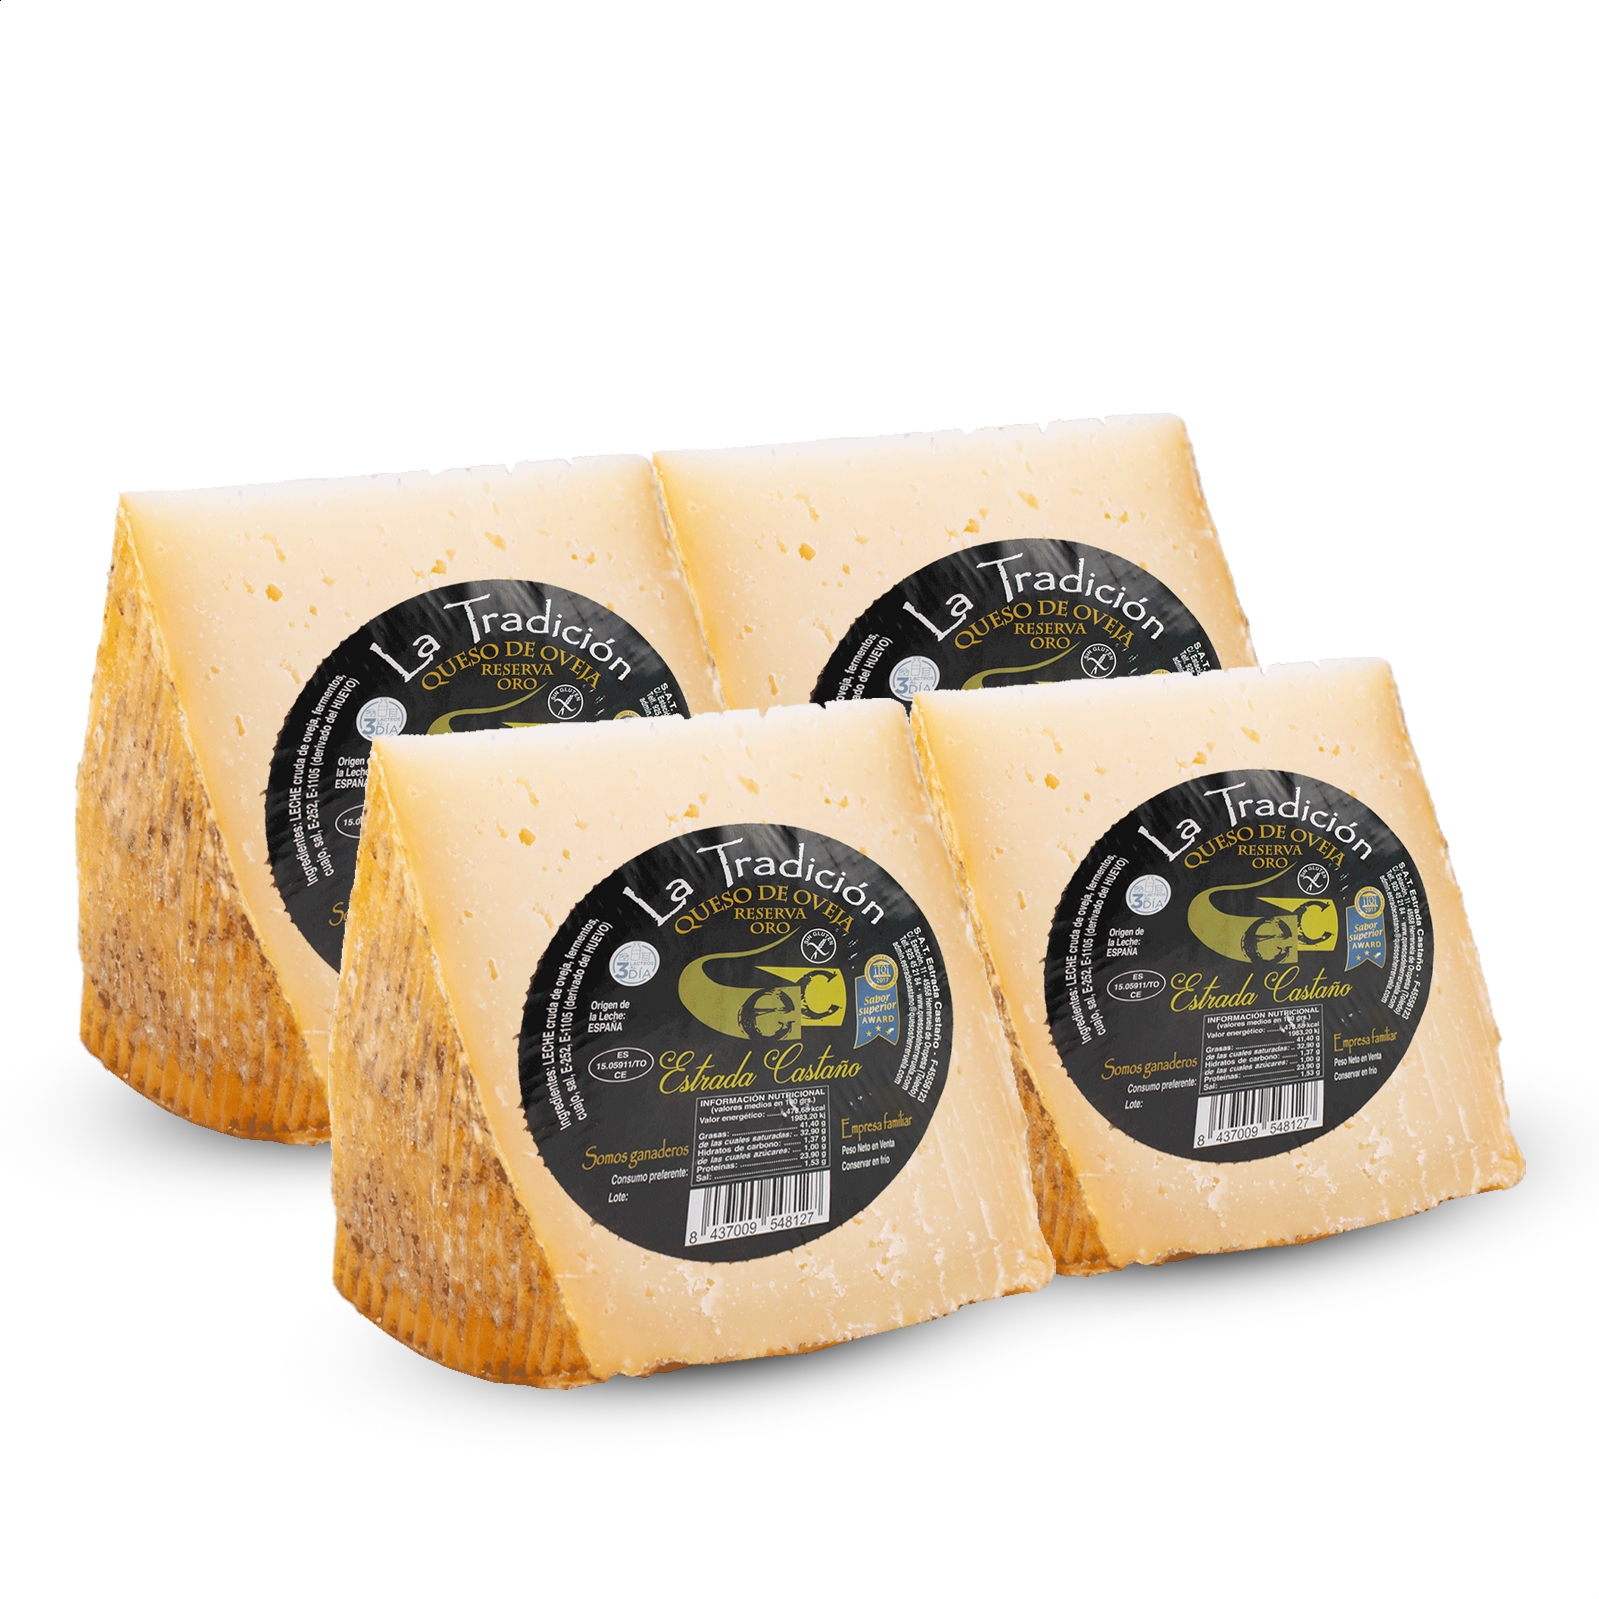 Quesería Estrada Castaño - La Tradición cuñas de queso de oveja reserva oro 350-400g aprox, 4uds